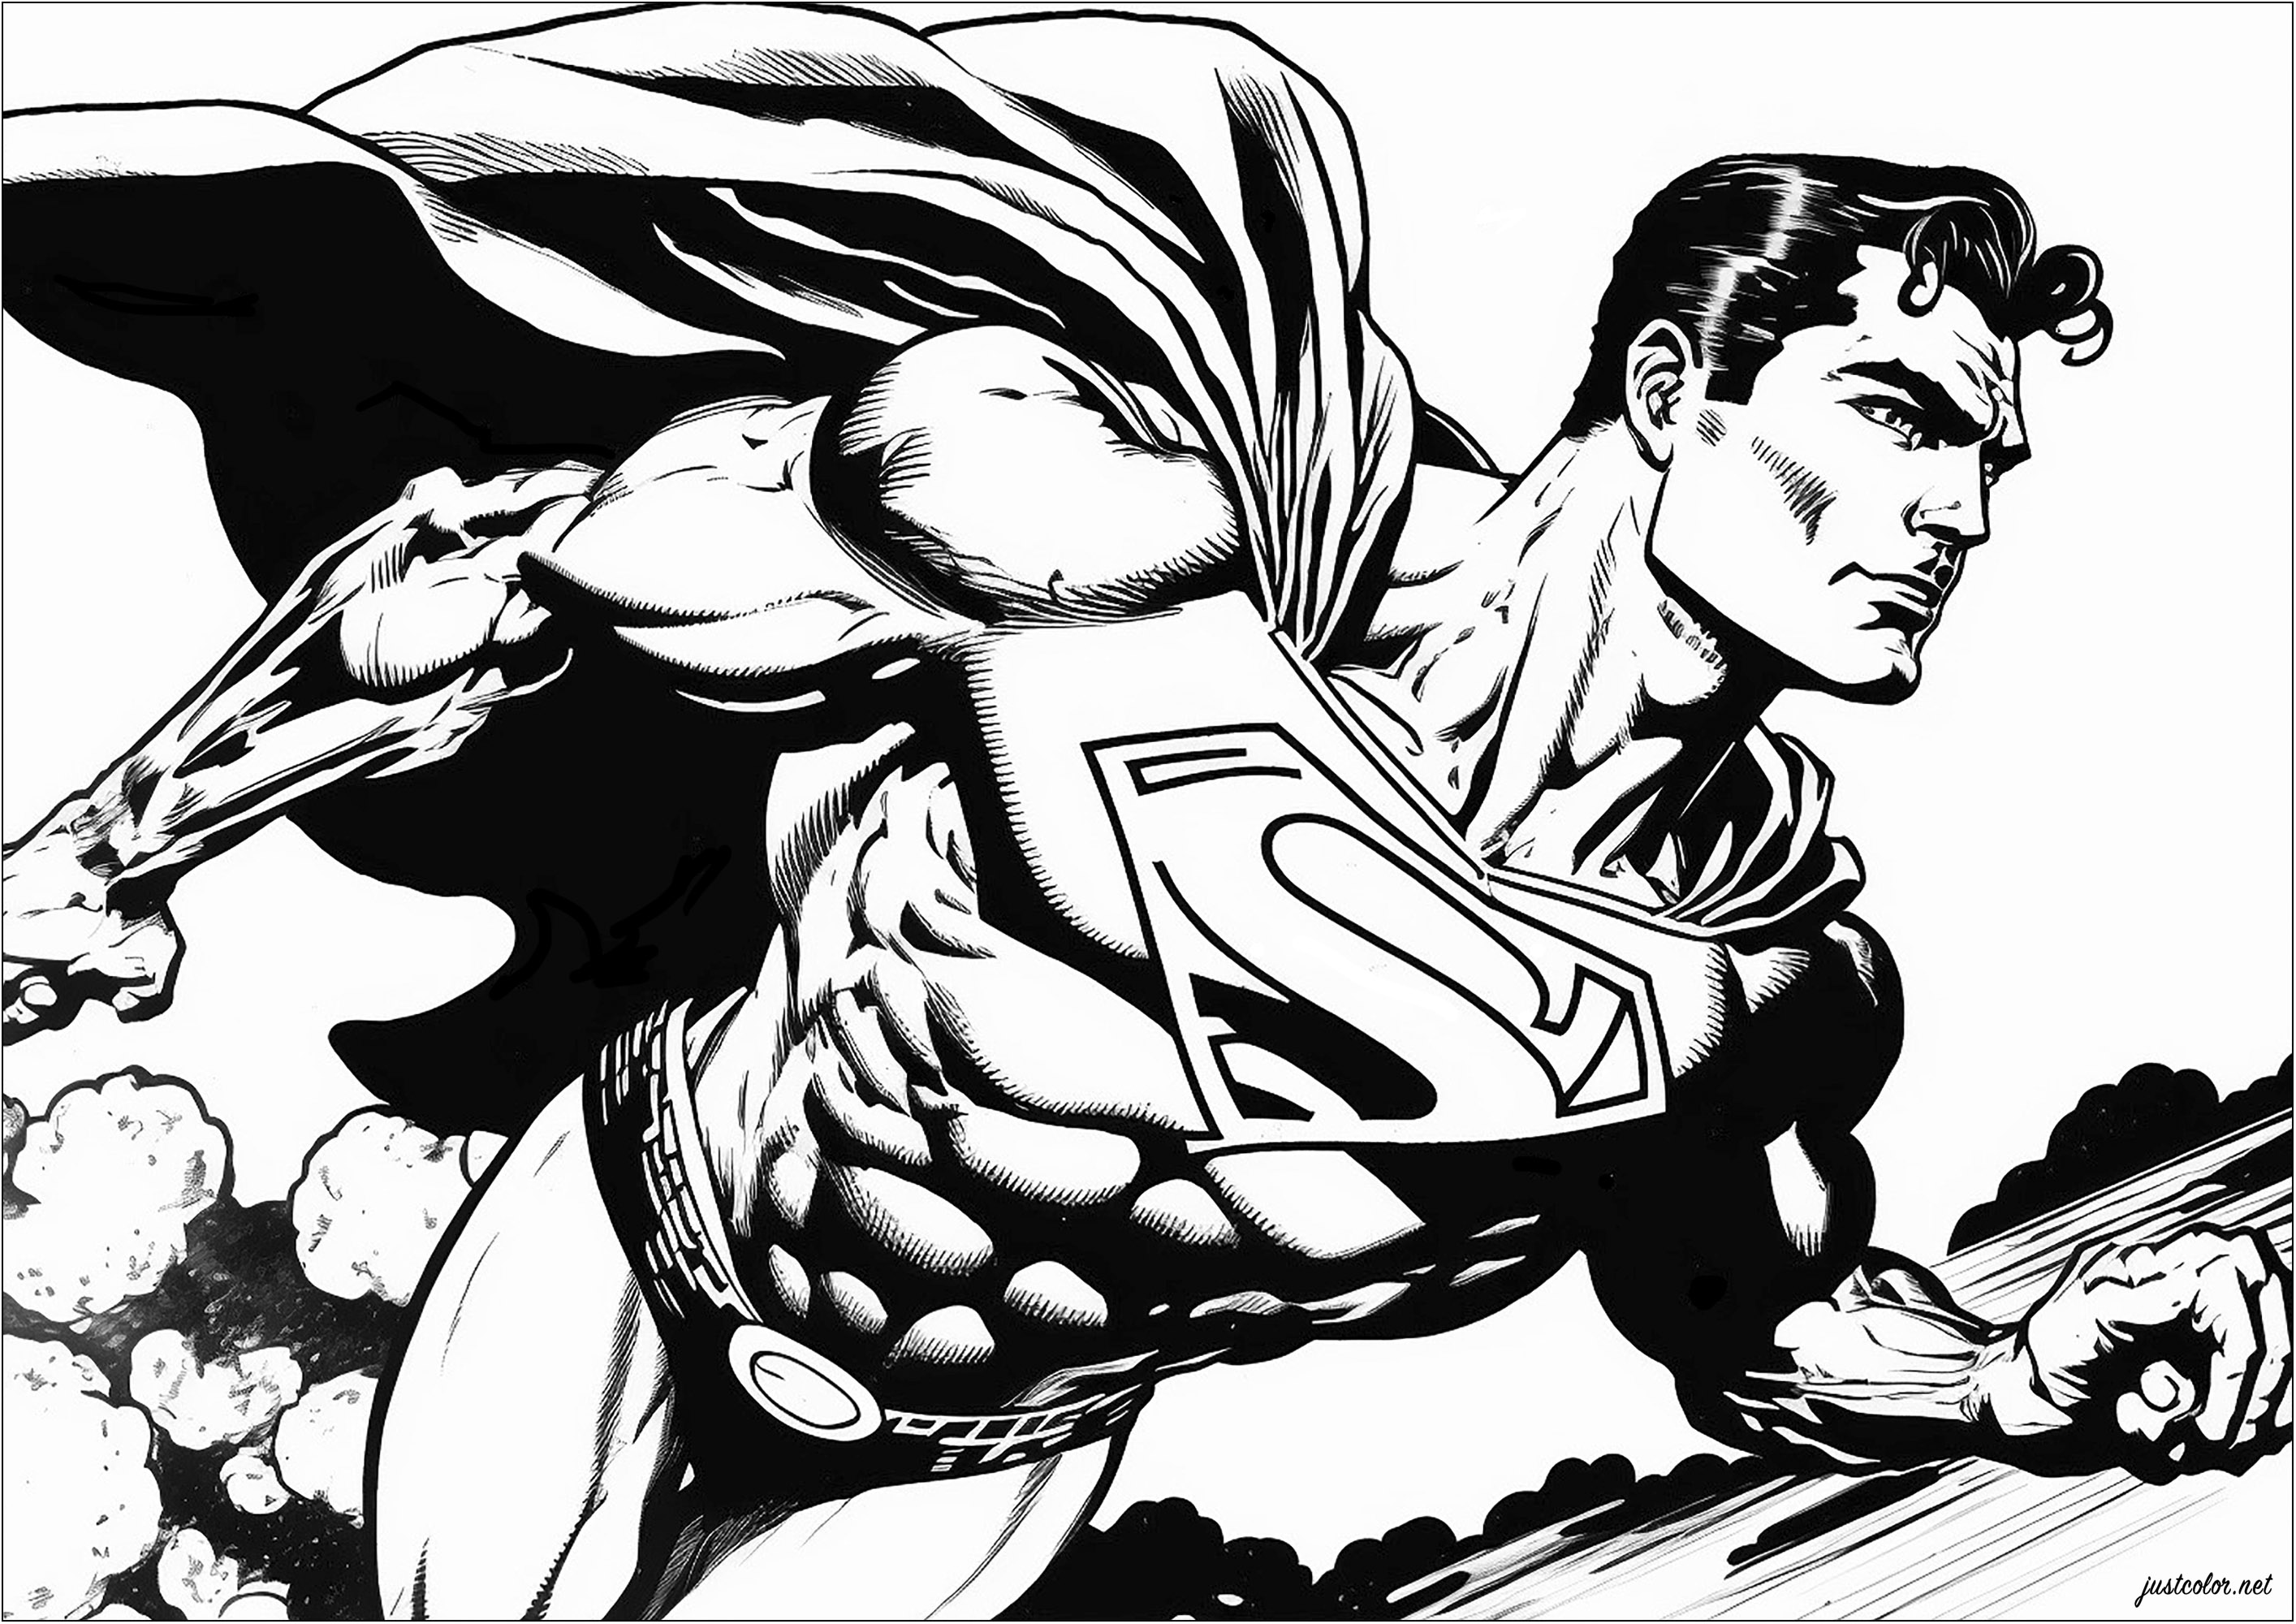 Superman, der durch den Himmel fliegtMach Superman mächtig und unbesiegbar mit deinen Farben ...